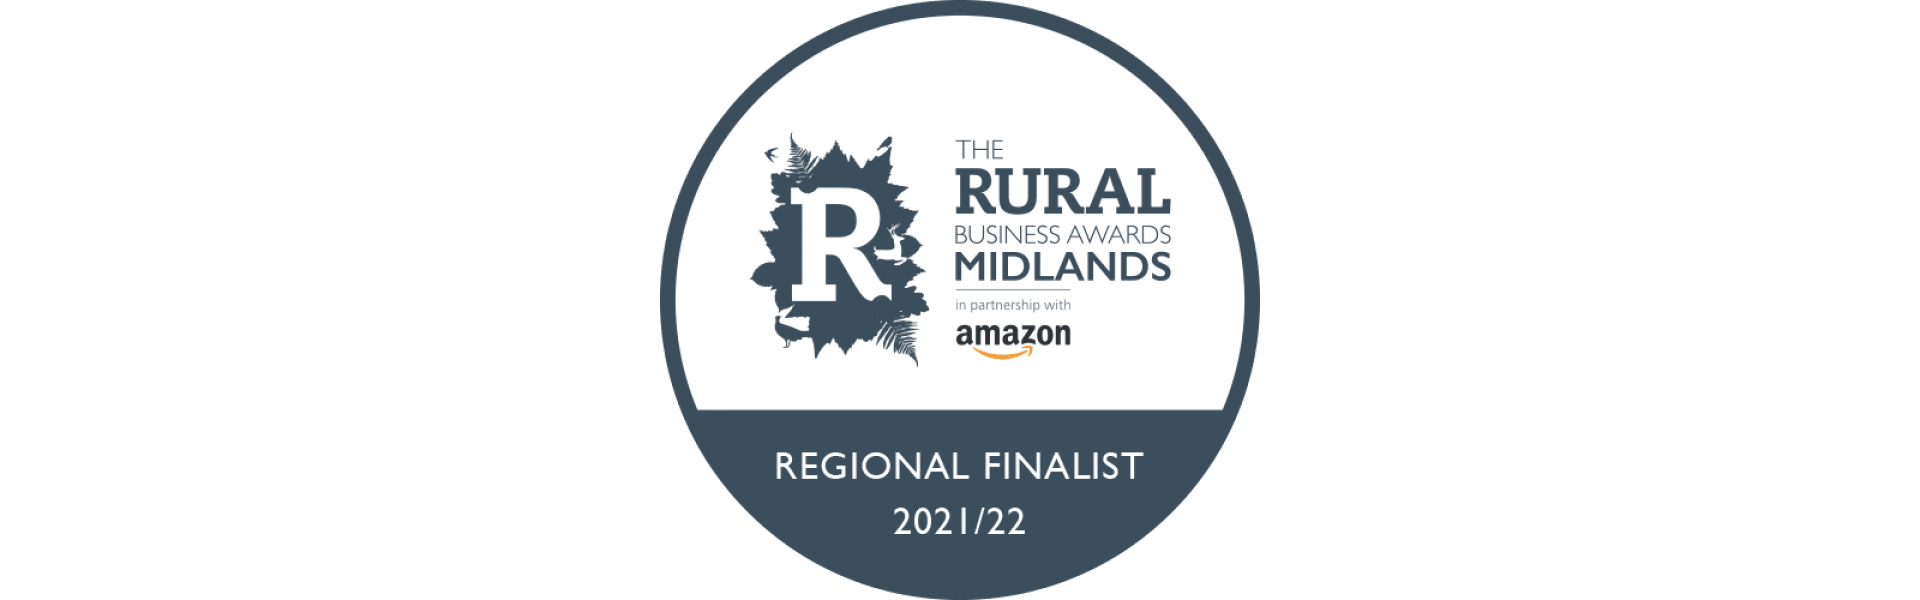 Rural Business Awards Finalist 